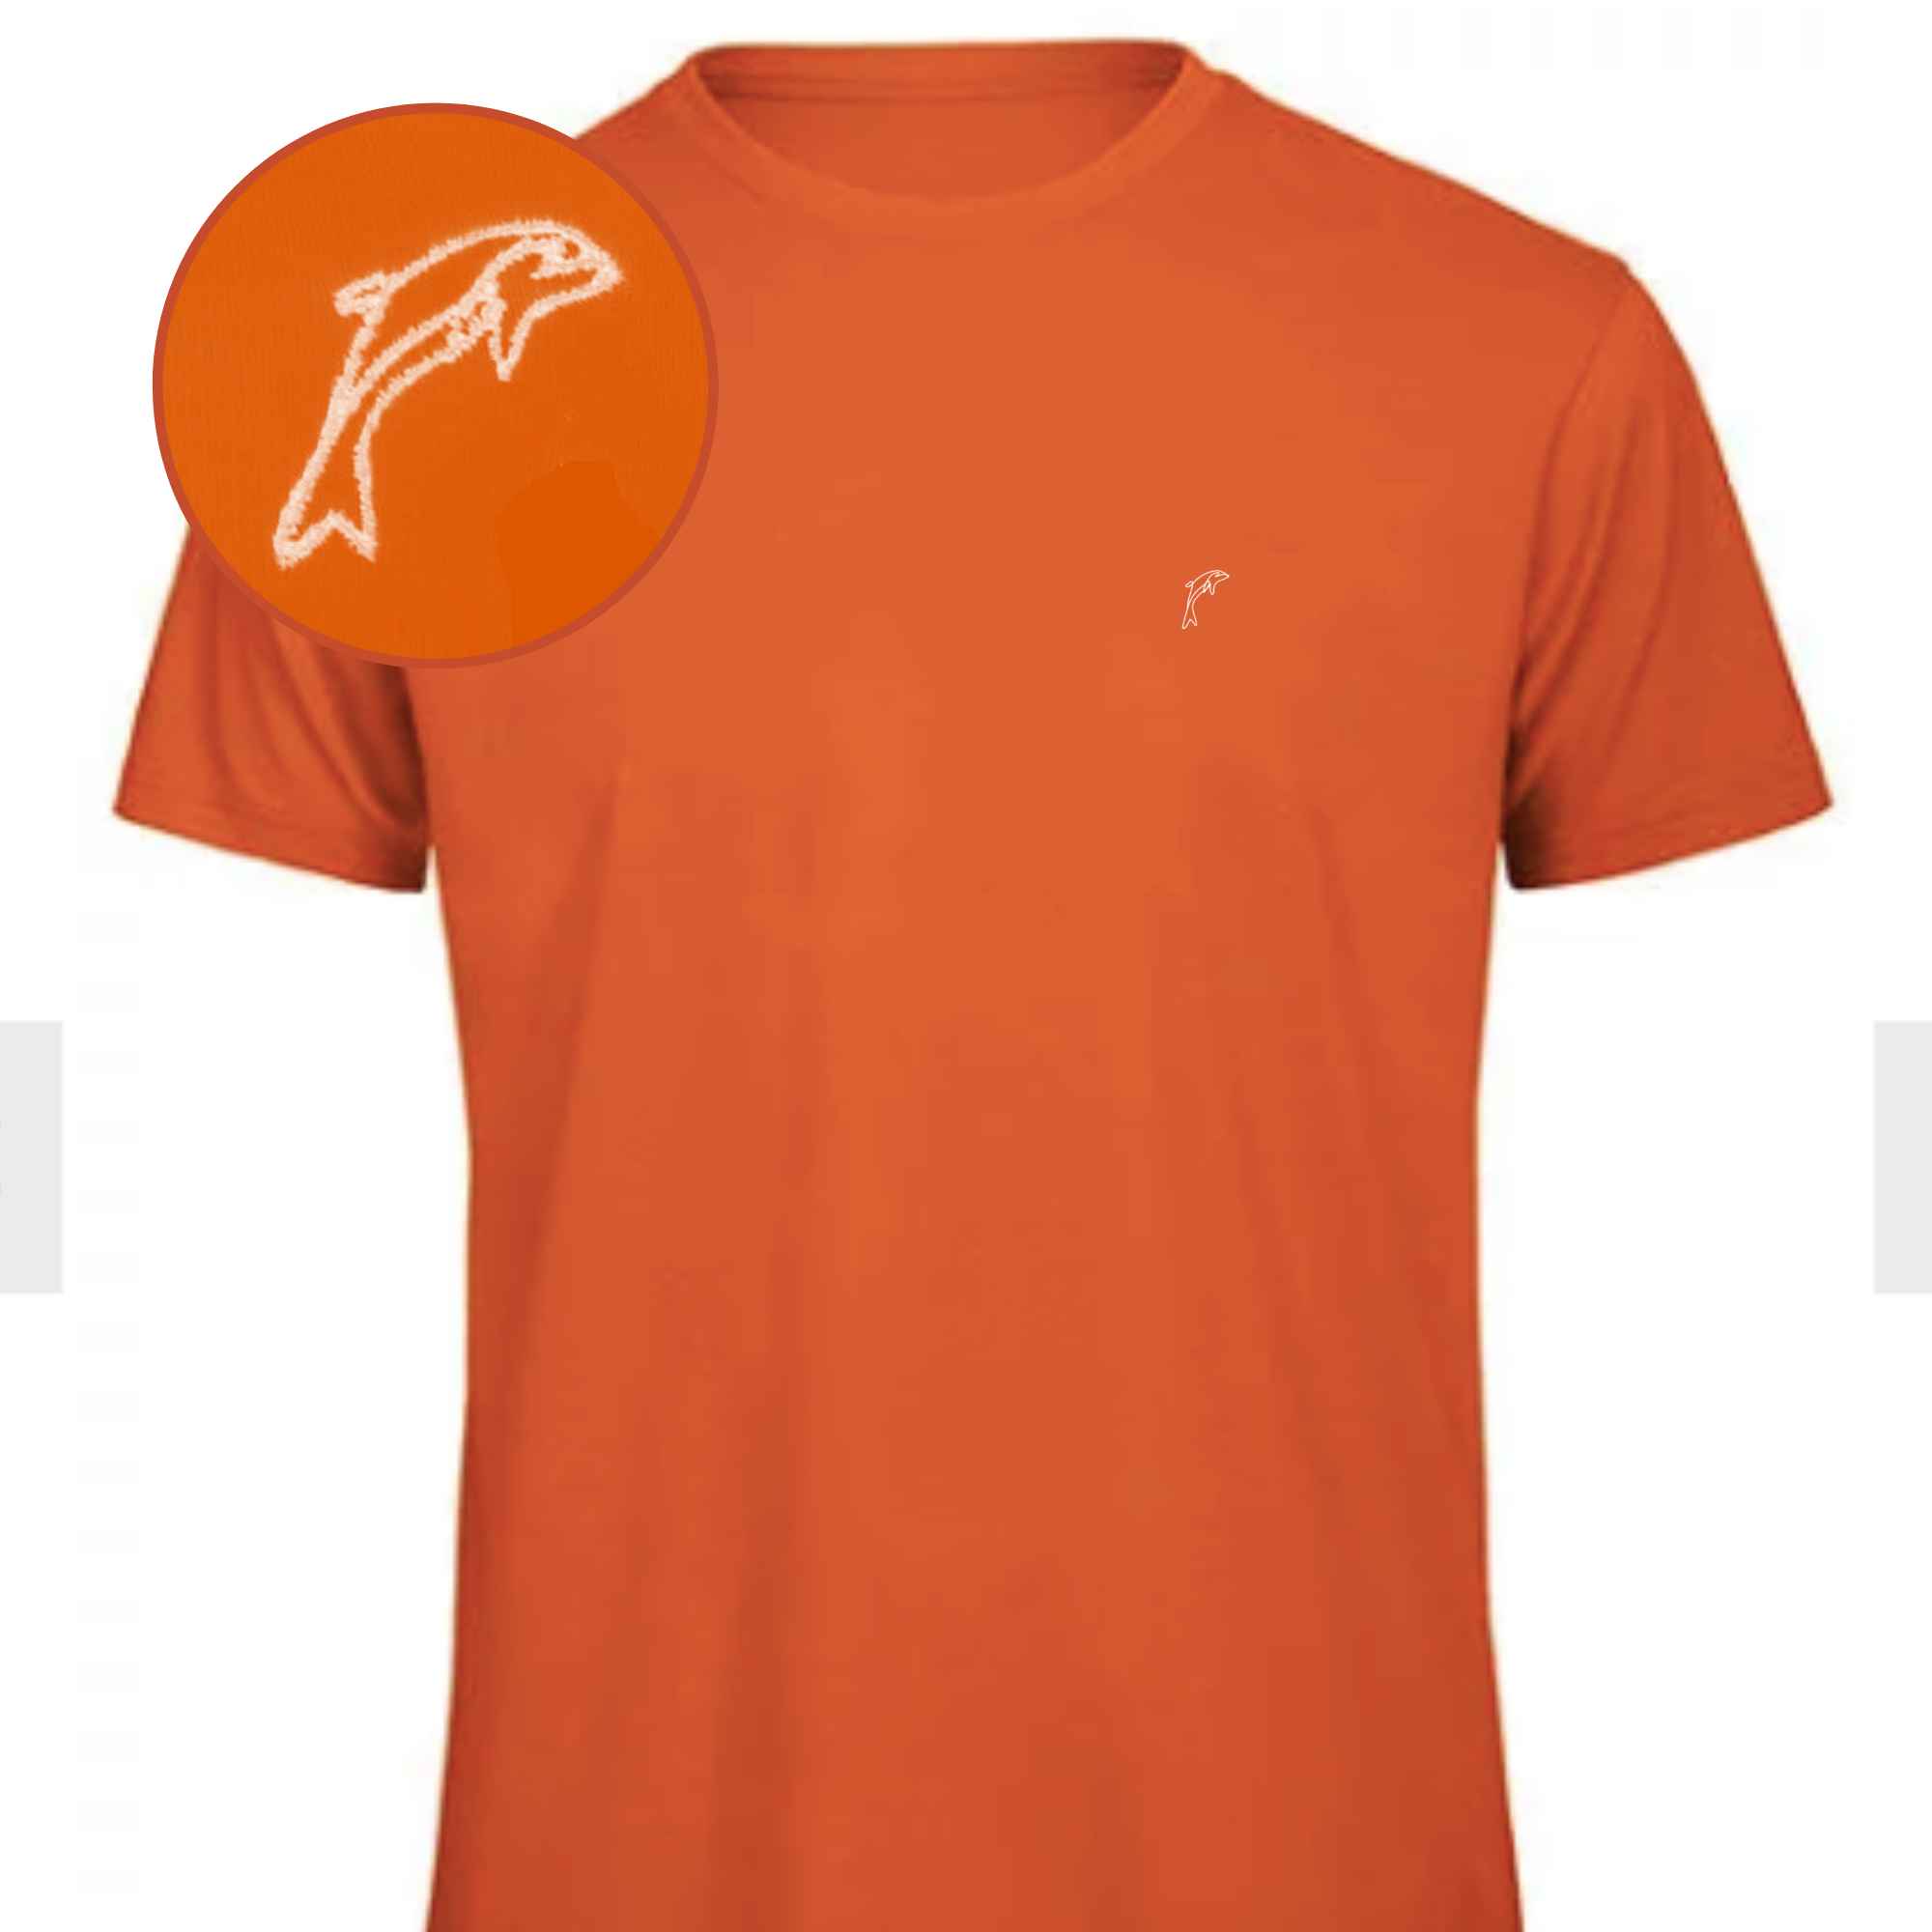 T-shirt mit Delfinmotiv bestickt in kräftigem Orange und Stickfarbe nach Wahl